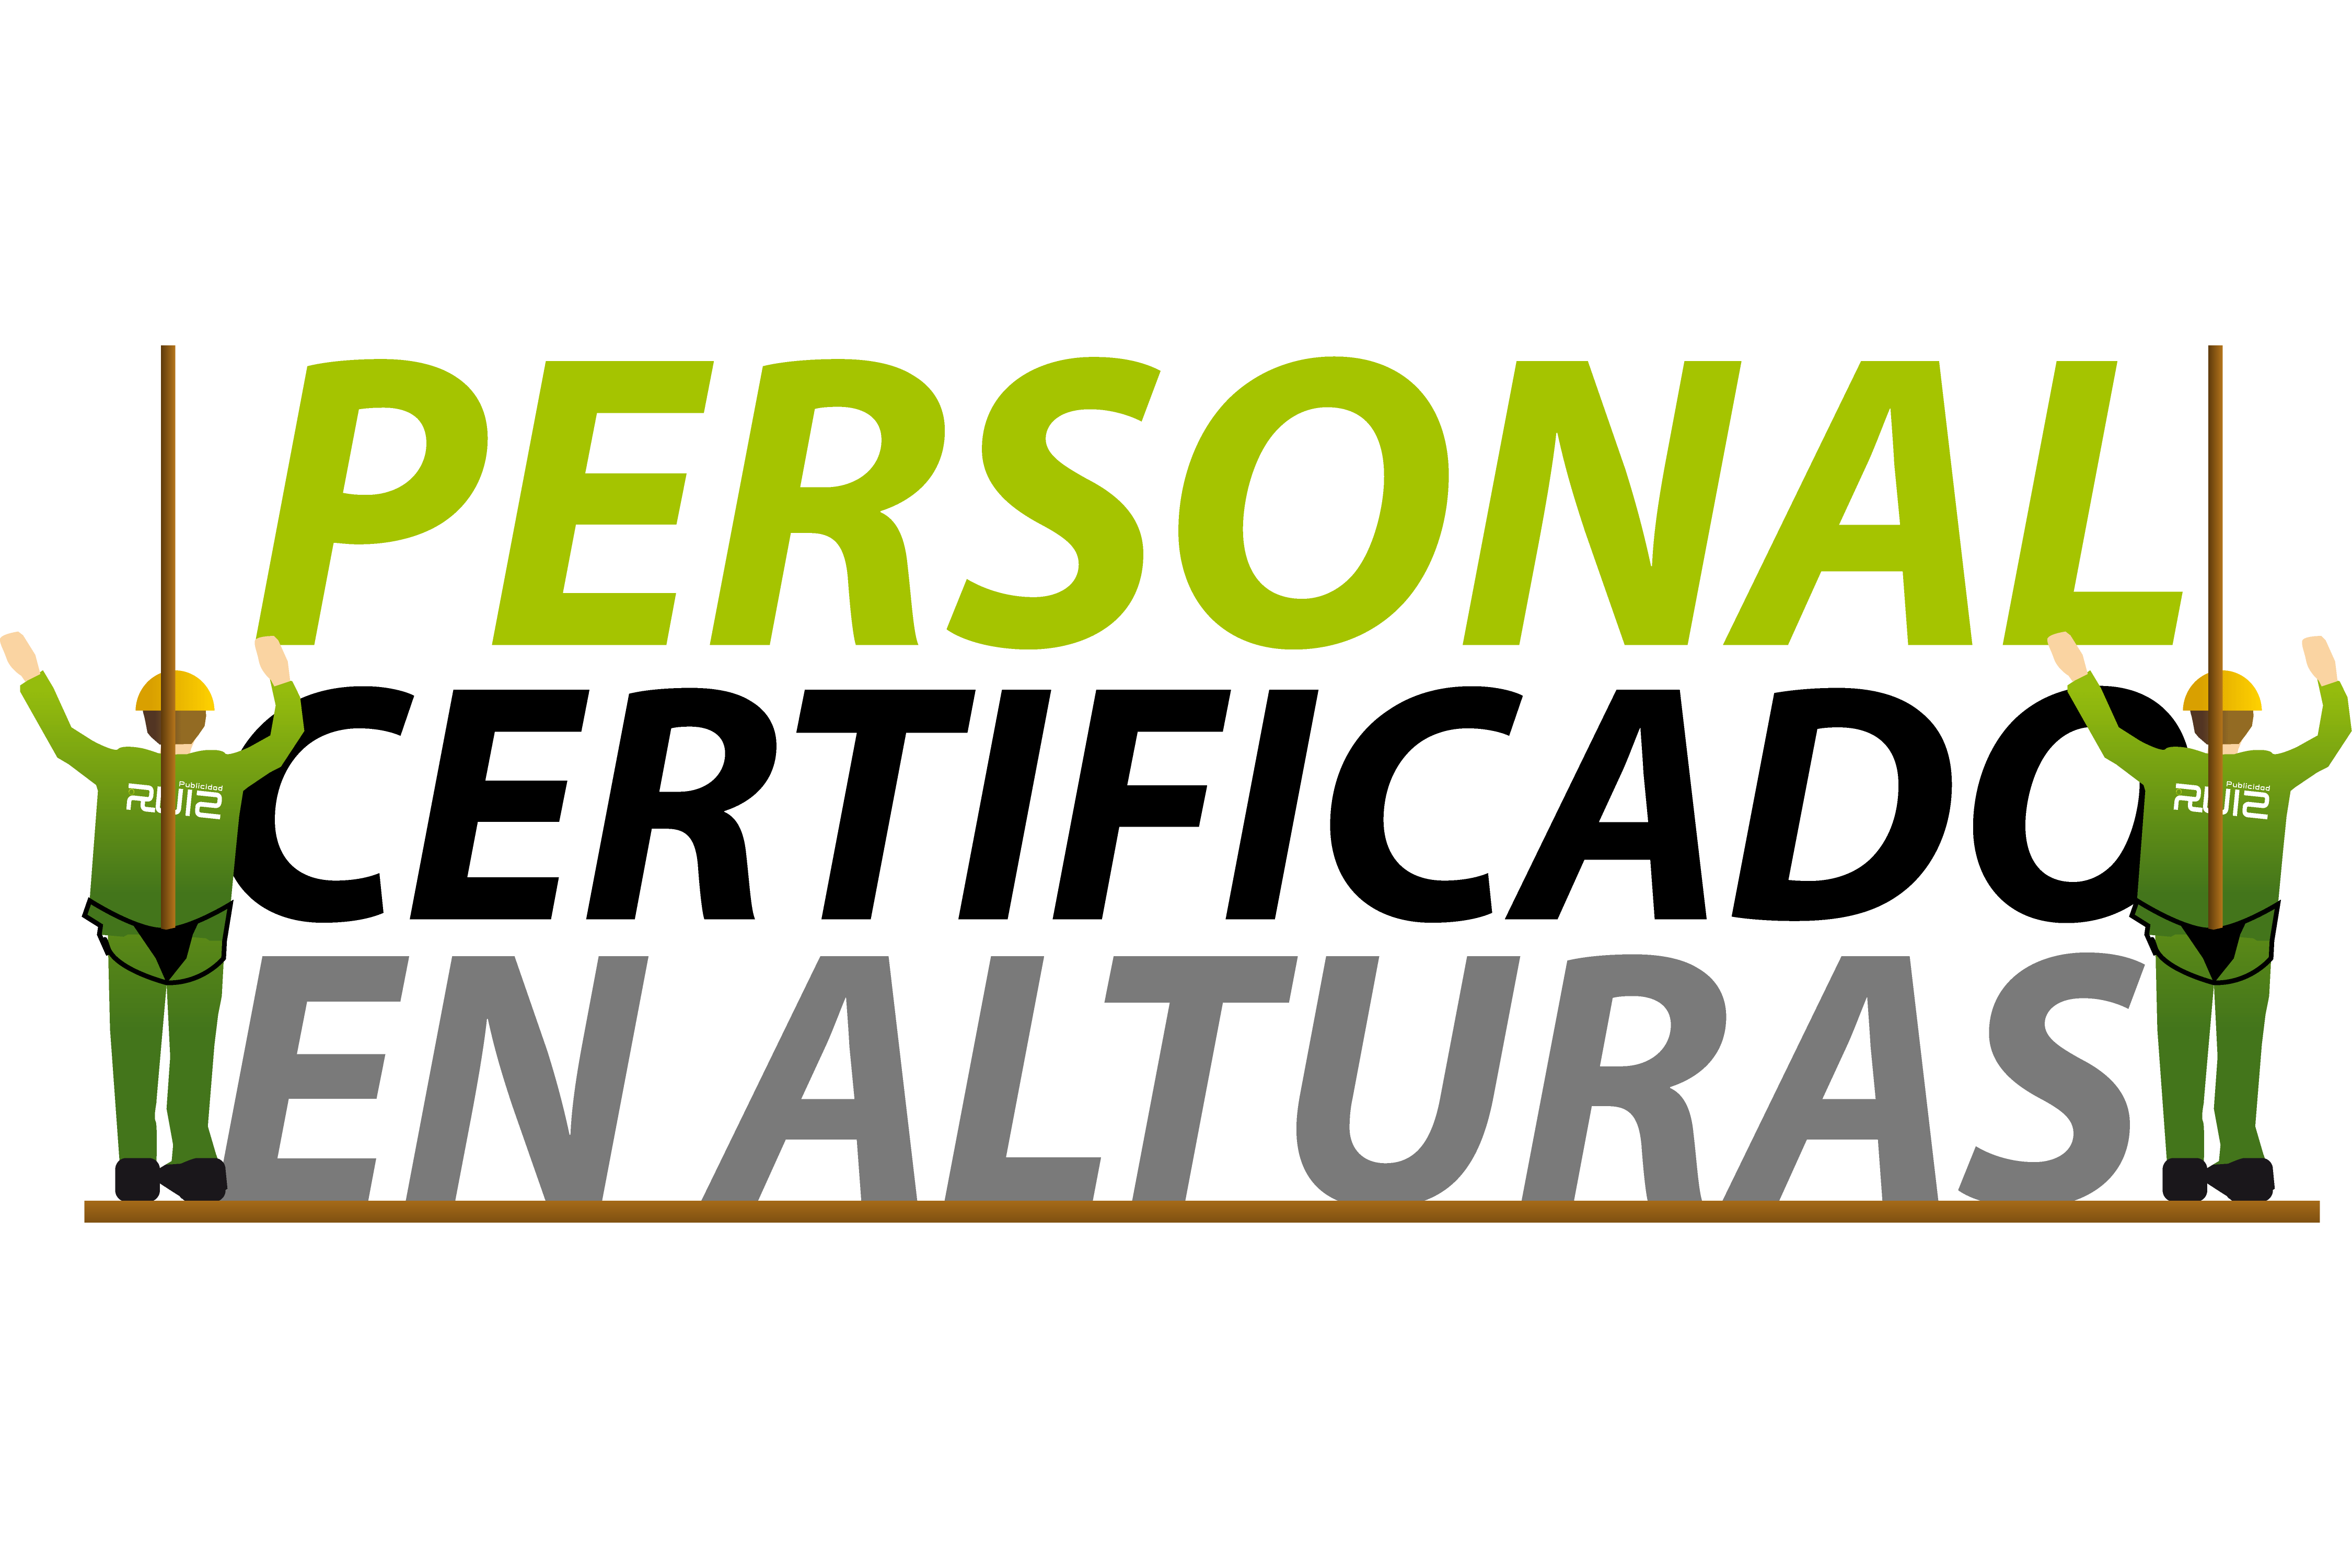 Personal certificado en alturas